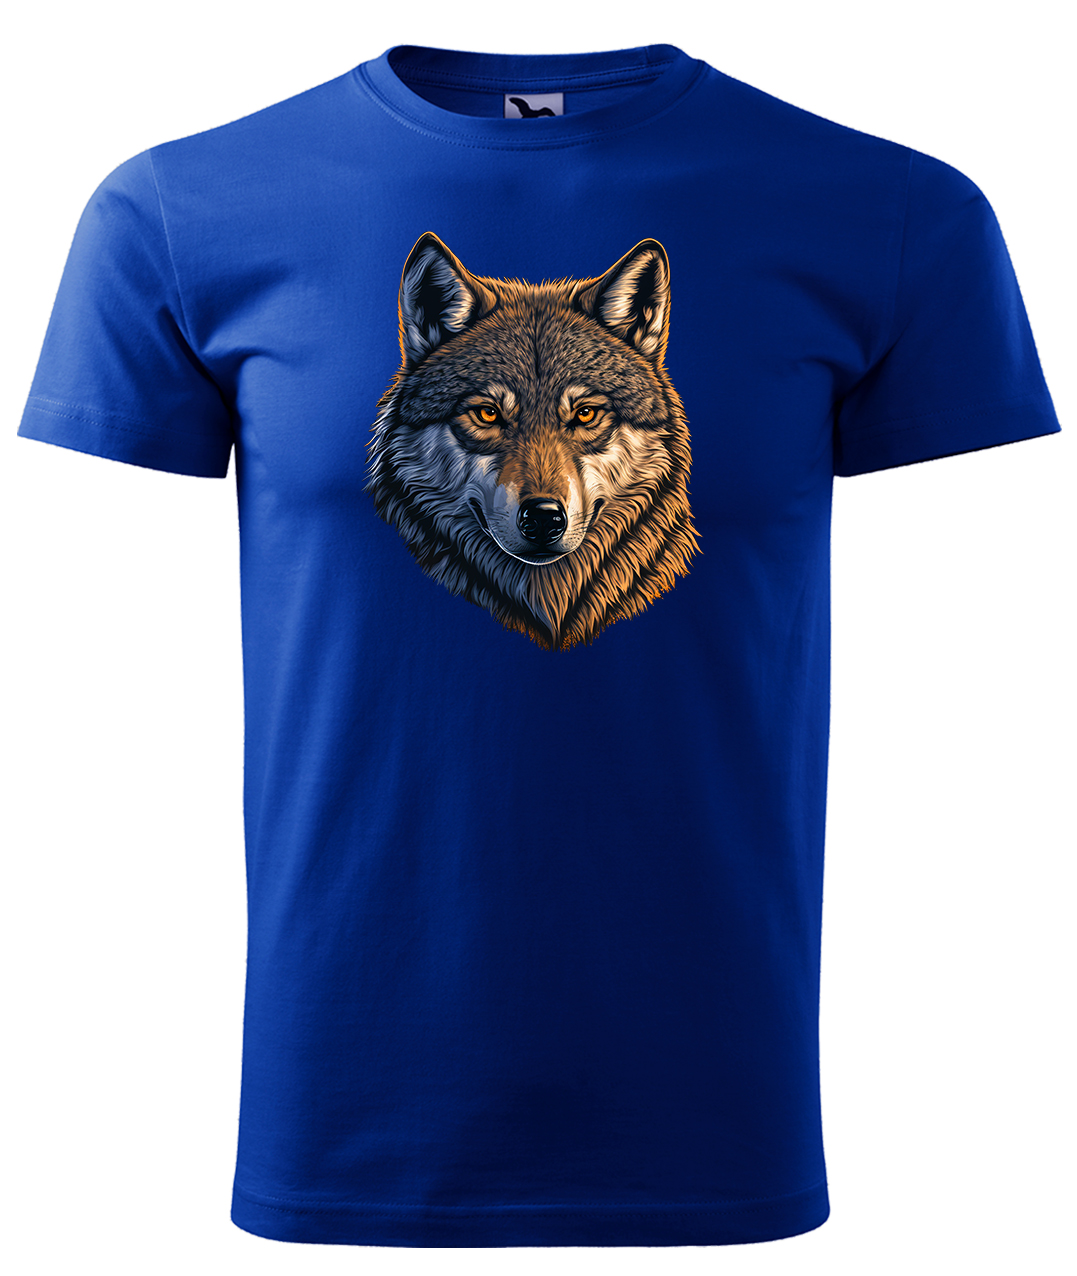 Dětské tričko s vlkem - Hlava vlka Velikost: 8 let / 134 cm, Barva: Královská modrá (05), Délka rukávu: Krátký rukáv